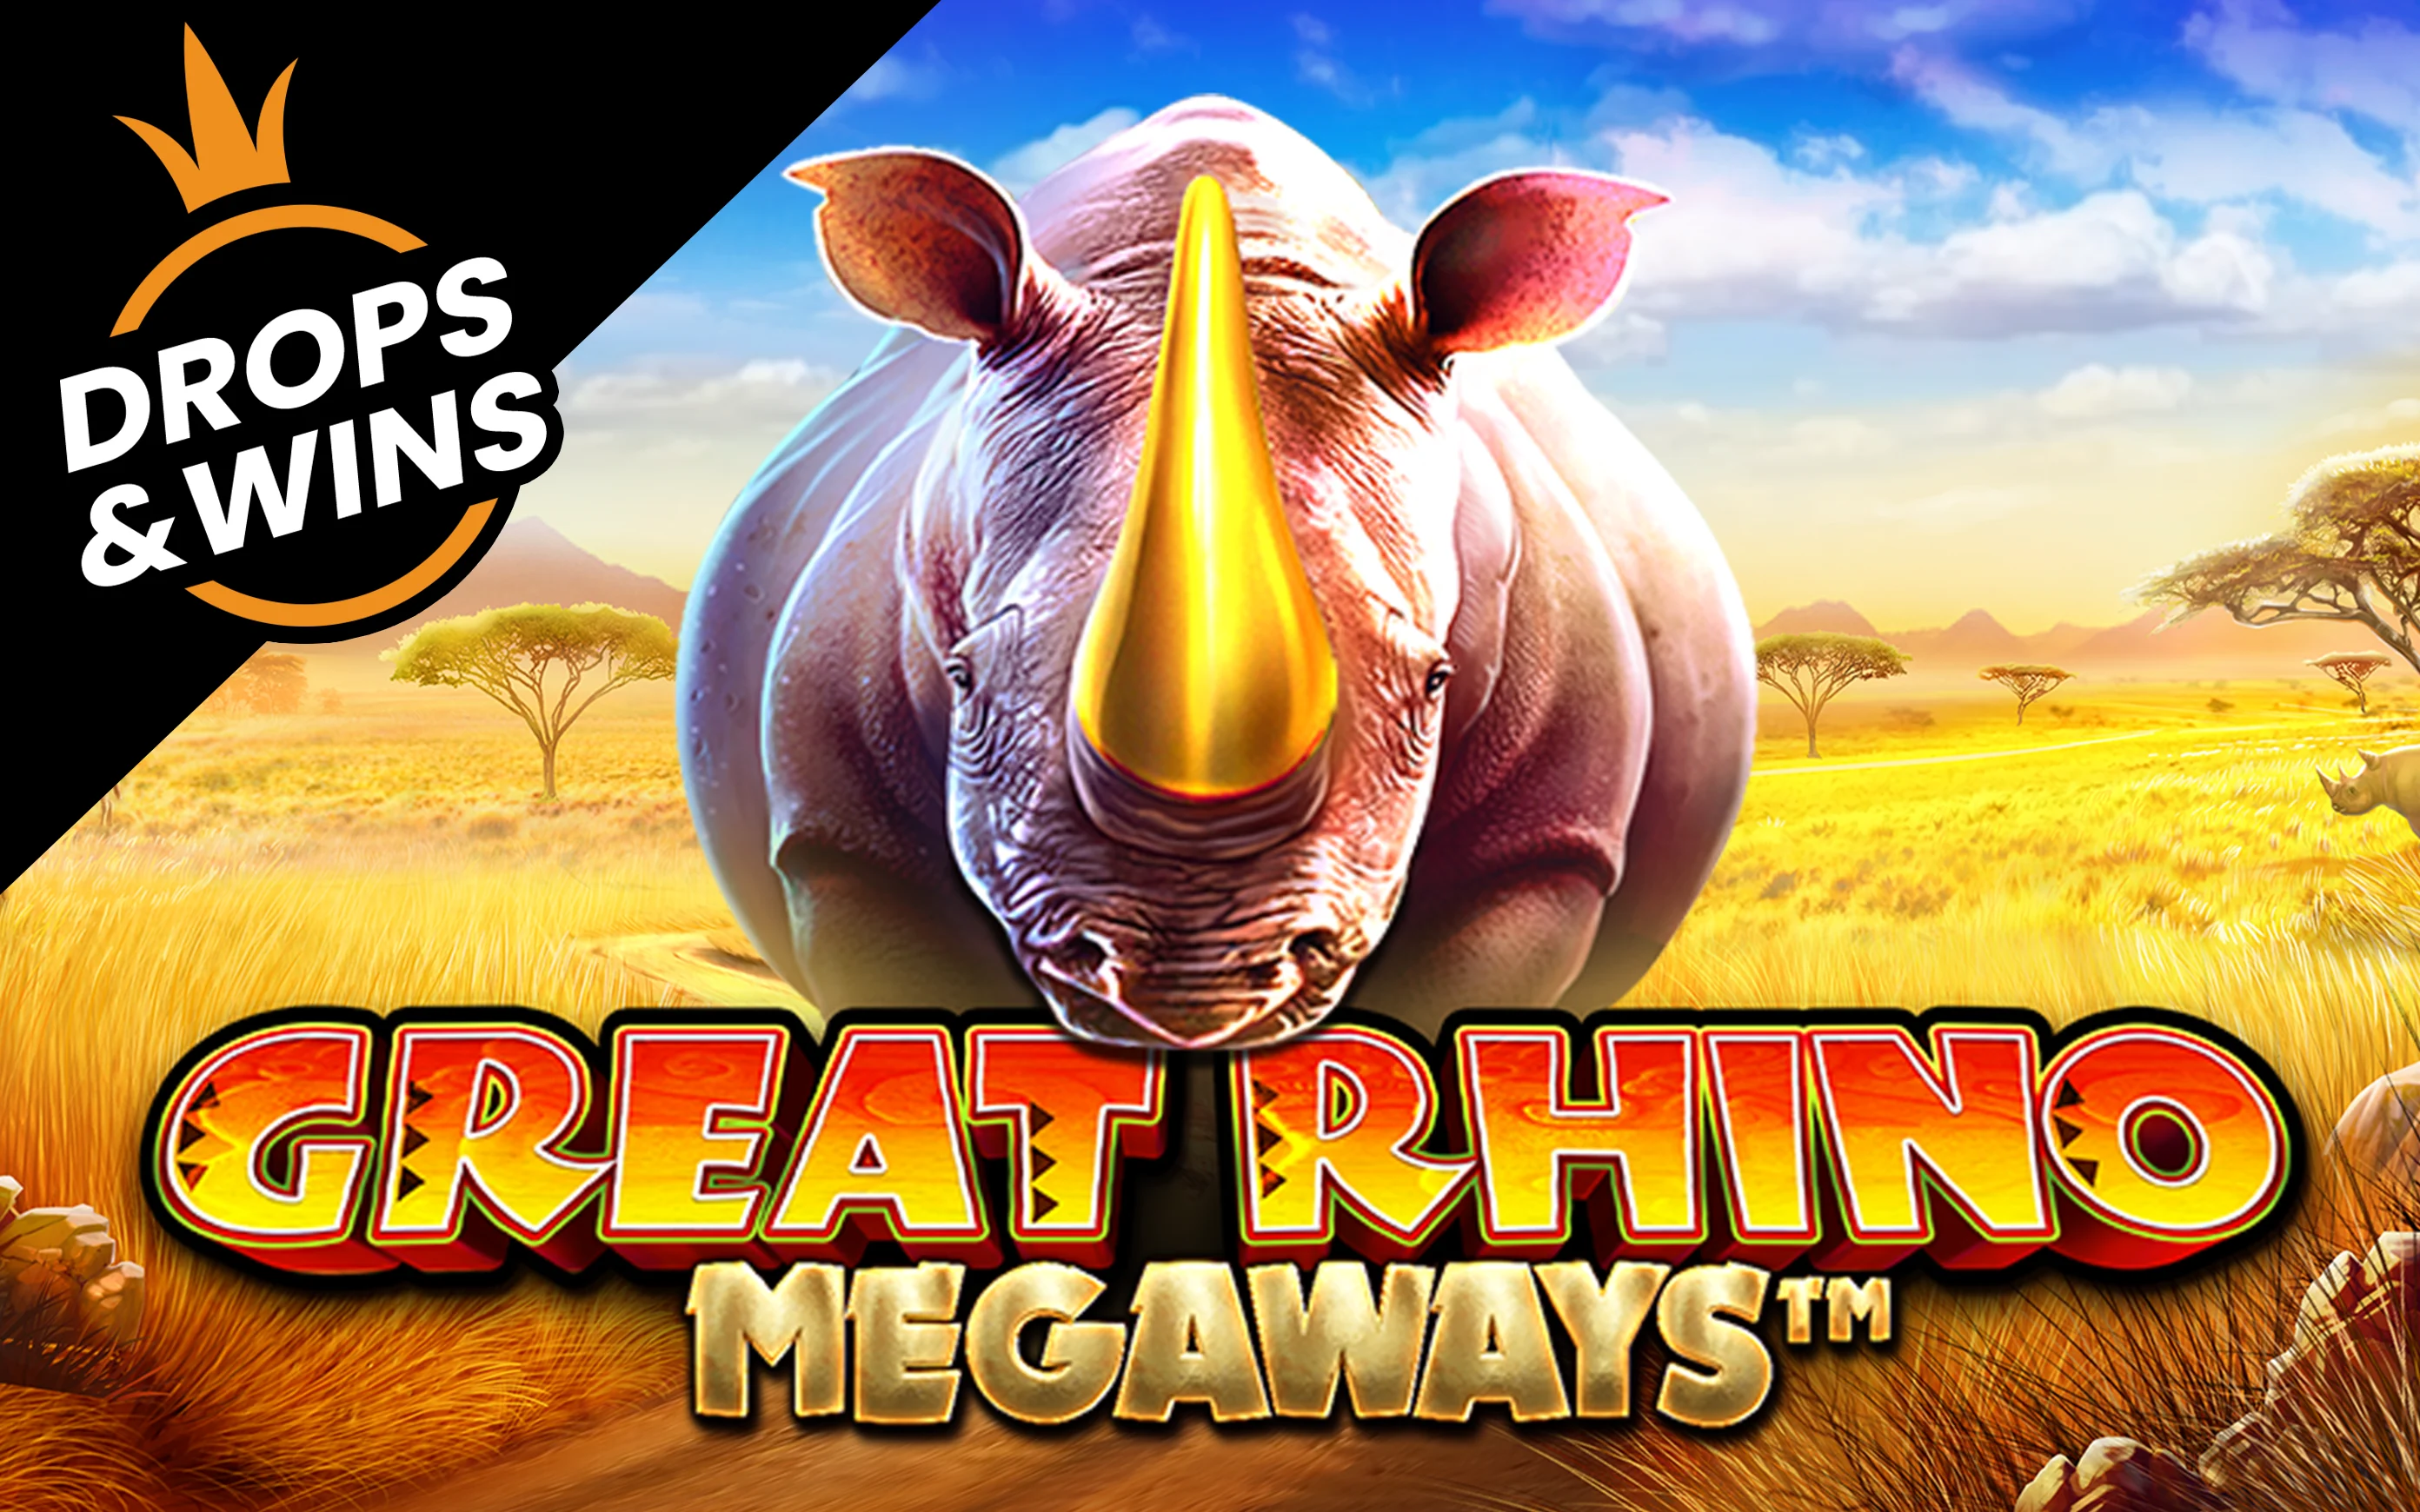 Play Great Rhino Megaways™ on Starcasino.be online casino